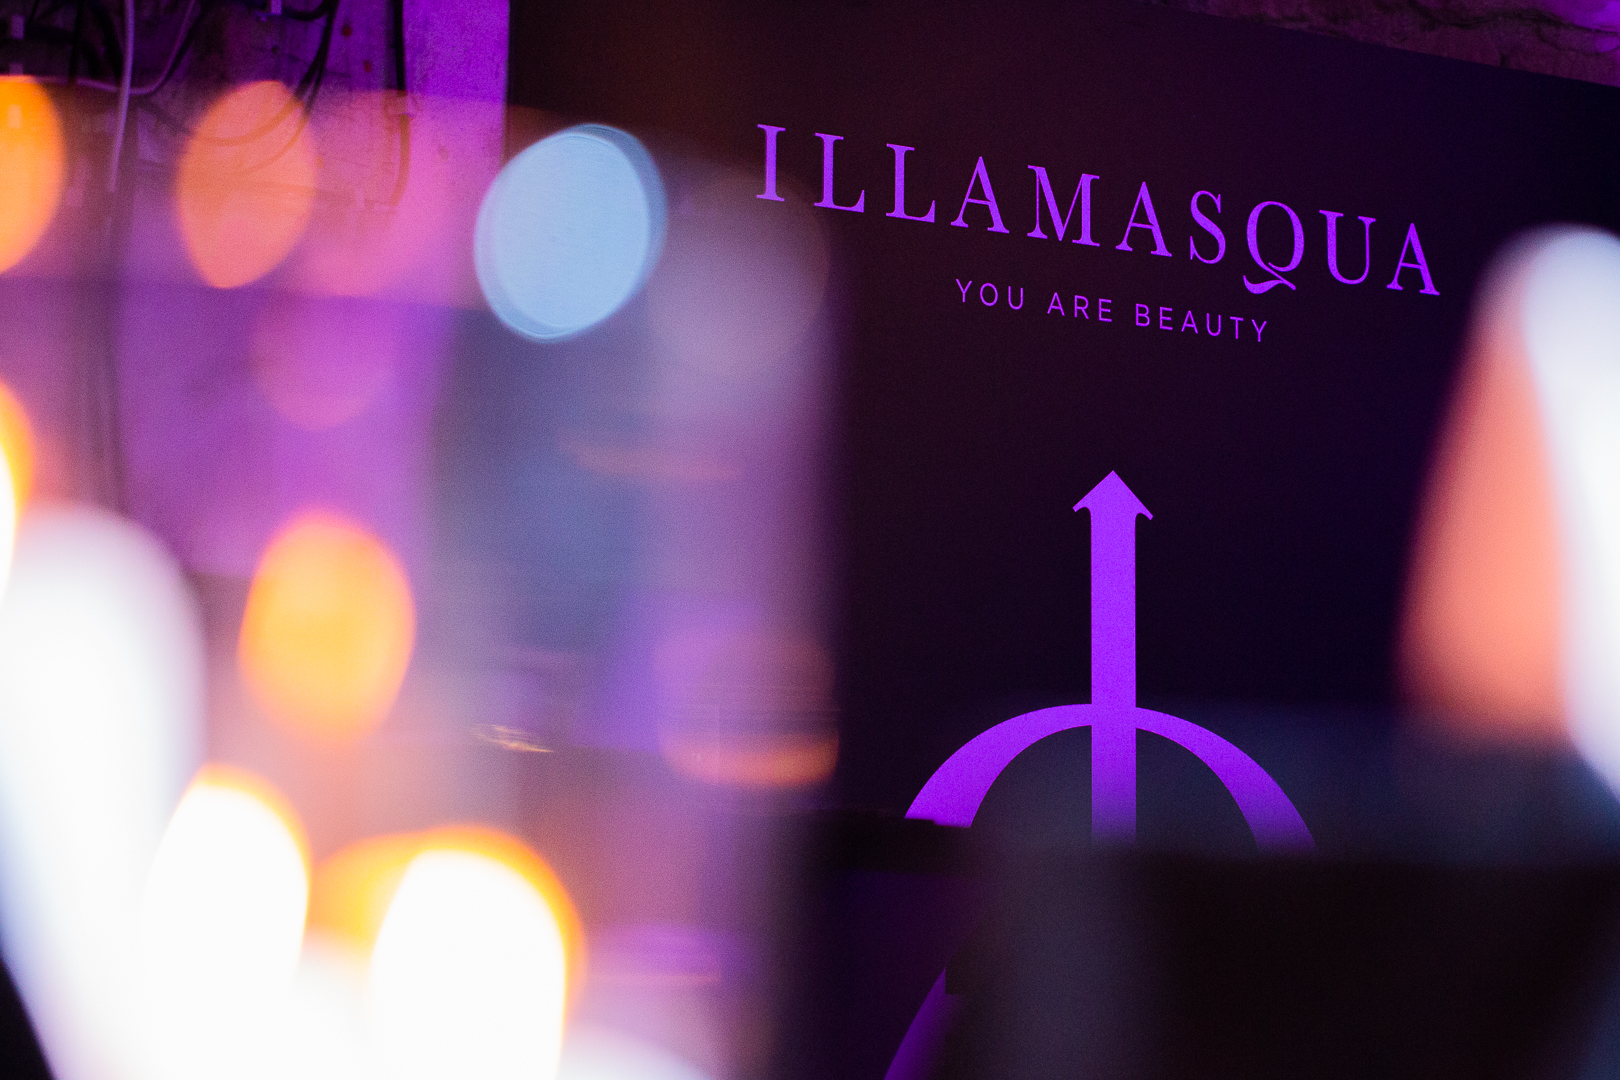 Illamasqua @DIM 2021 WEB 9999 U Srbiju je konačno stigao čuveni makeup brend Illamasqua, a mi ti predstavljamo njihova top 3 proizvoda po našem izboru